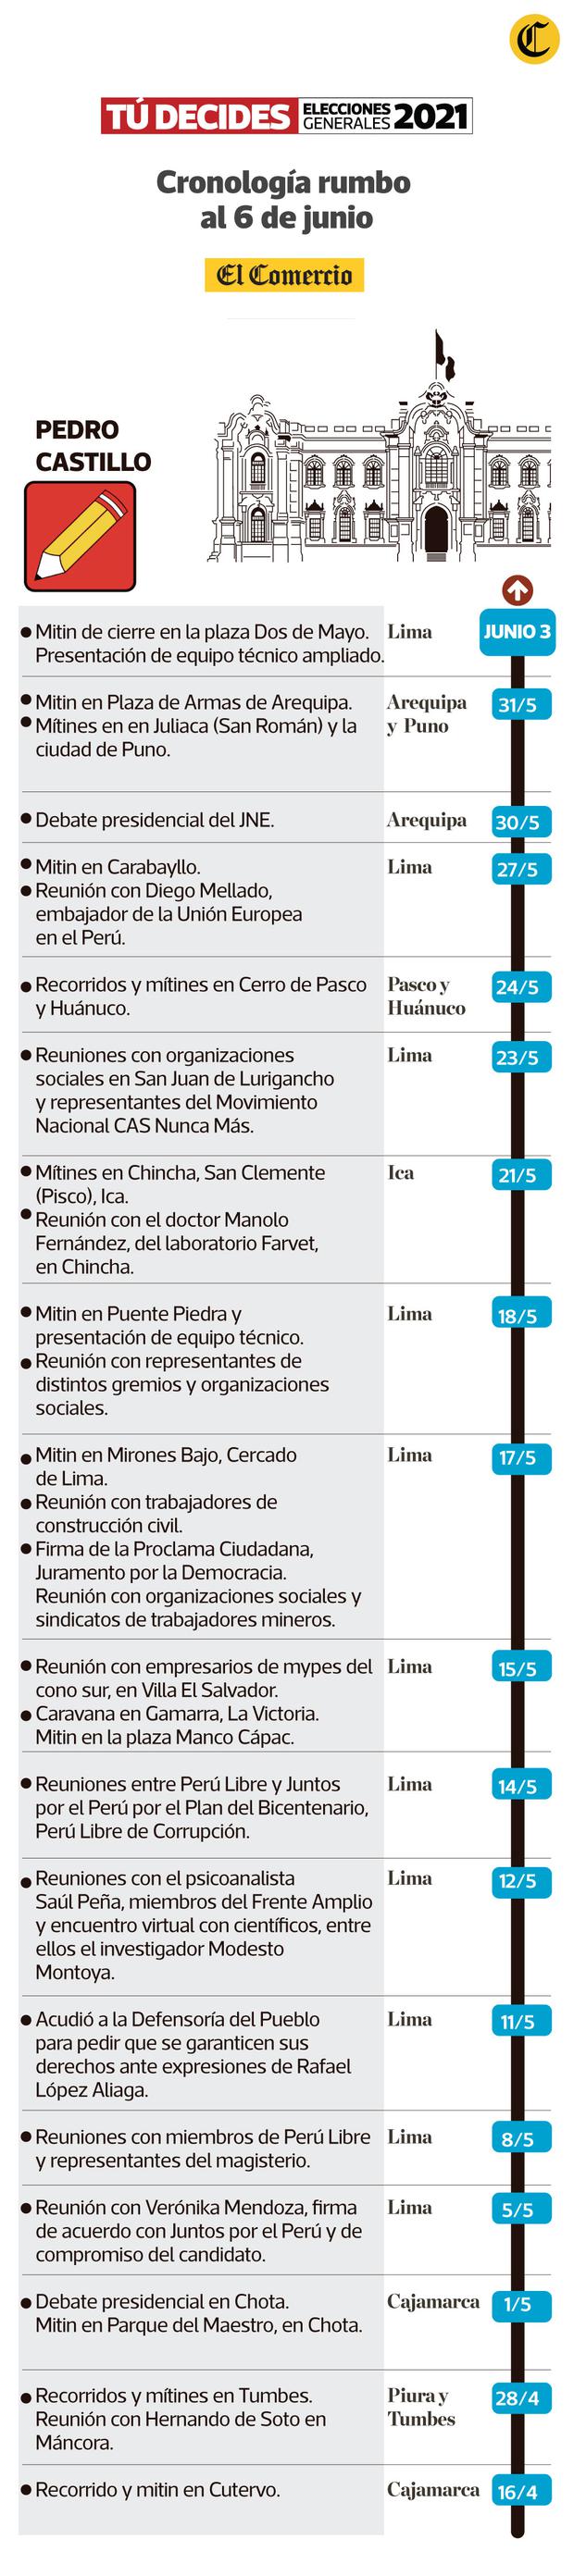 Cronología del cierre de campaña de Pedro Castillo. (Infografía: El Comercio)